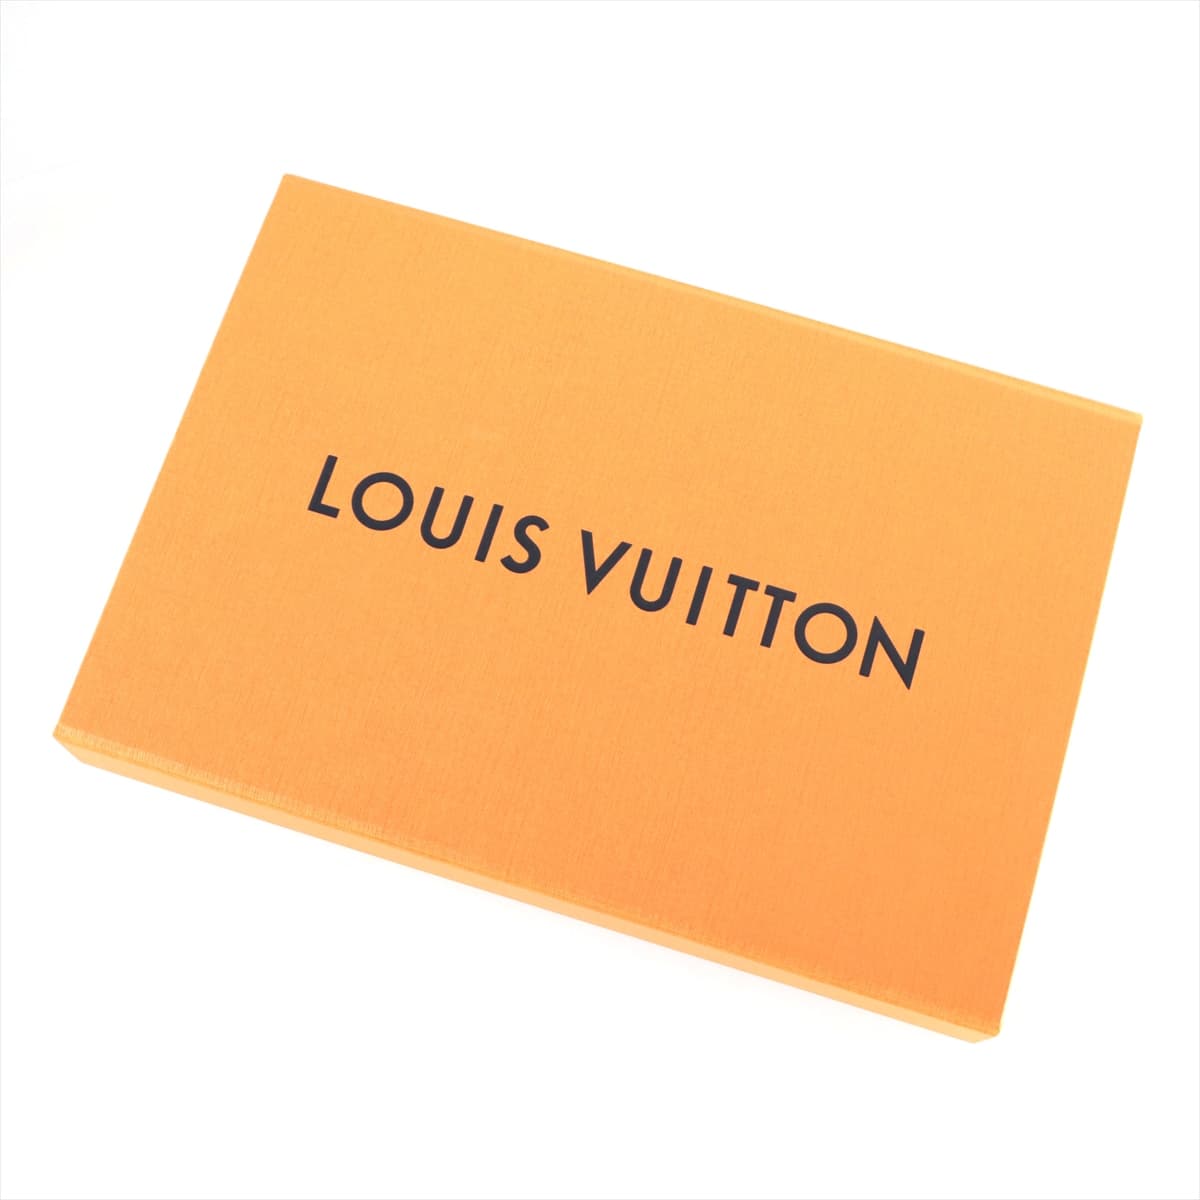 ルイヴィトン 21年 コットン Tシャツ S メンズ ブルー  RM212Q モノグラムグラディエント